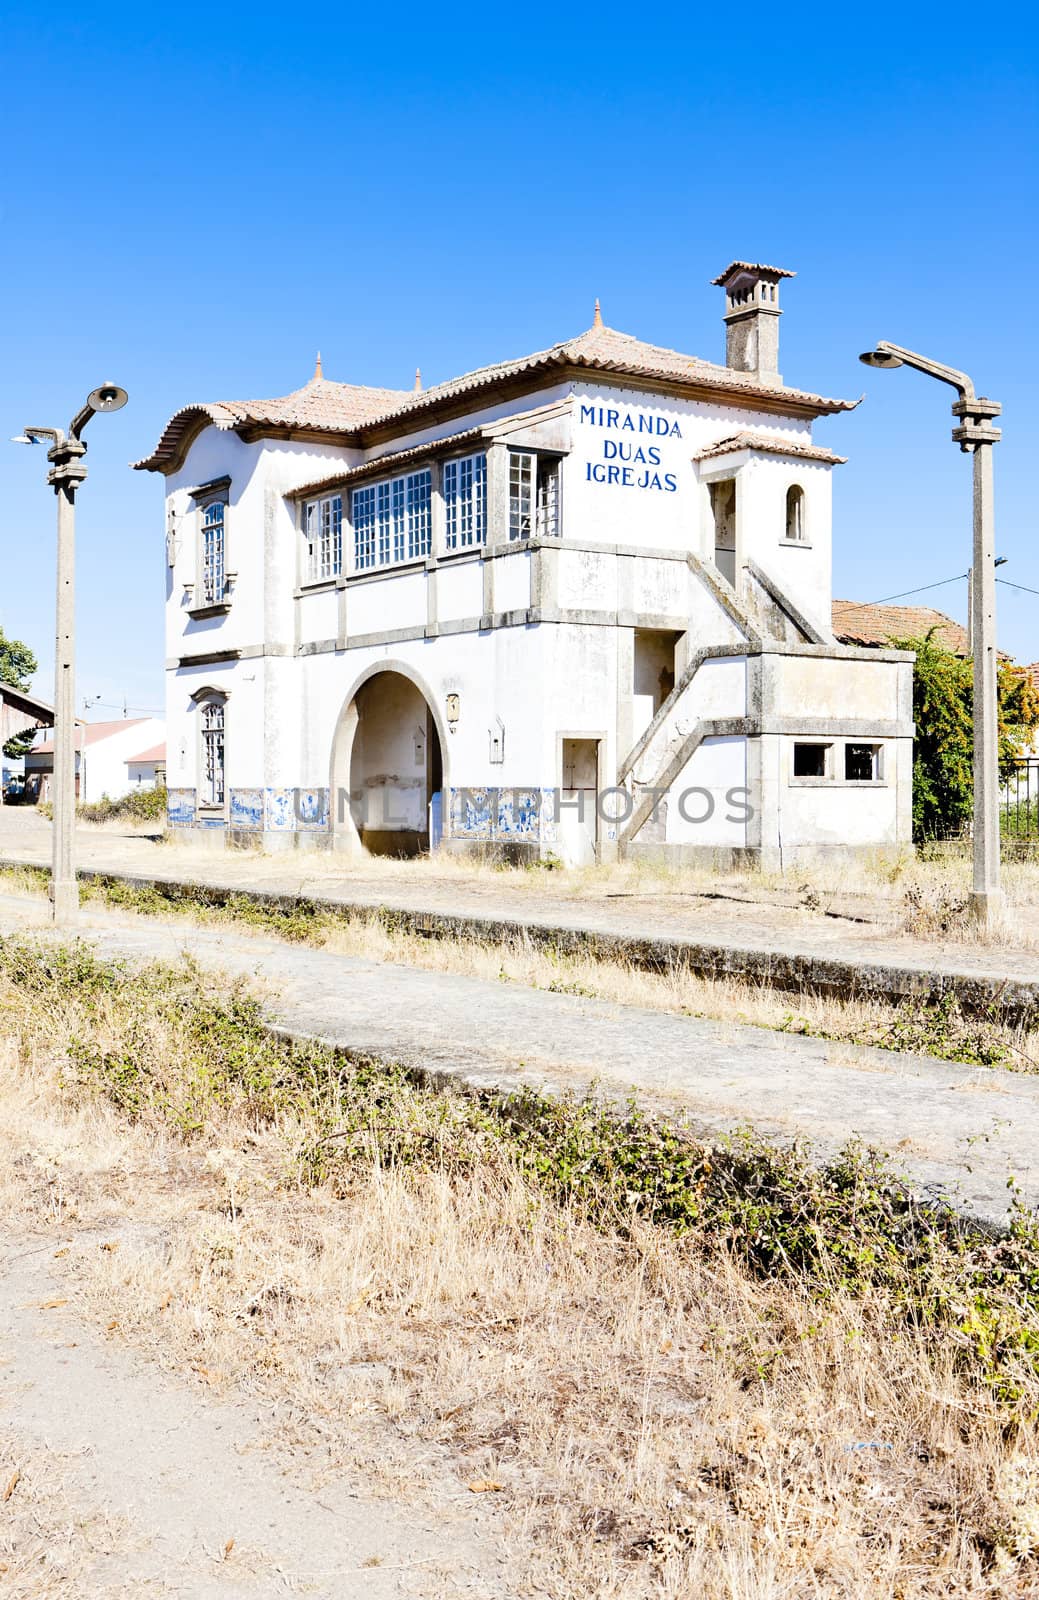 railway station of Duas Igrejas, Portugal